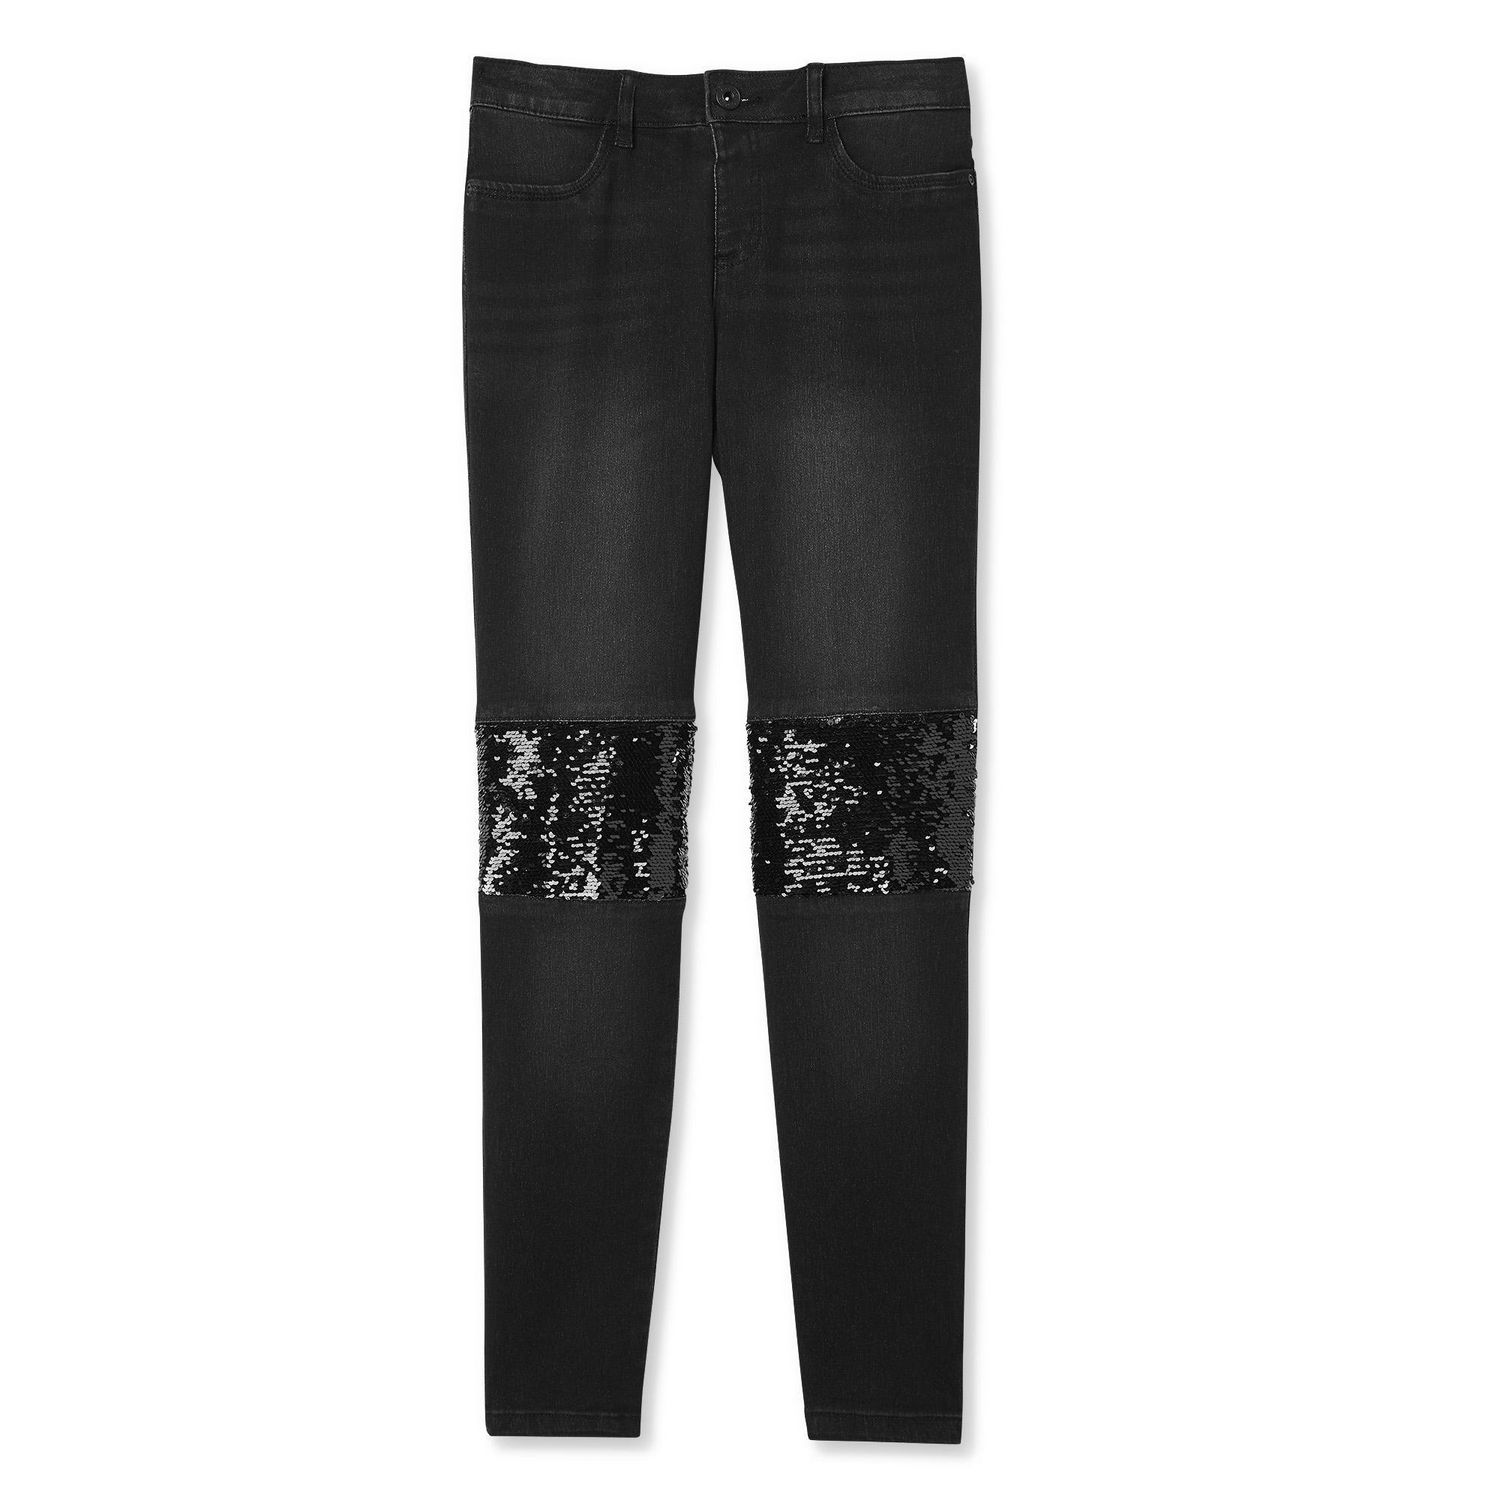 H&M/Divided Glittery Flared Leggings (Black), Women's Fashion, Bottoms,  Jeans & Leggings on Carousell